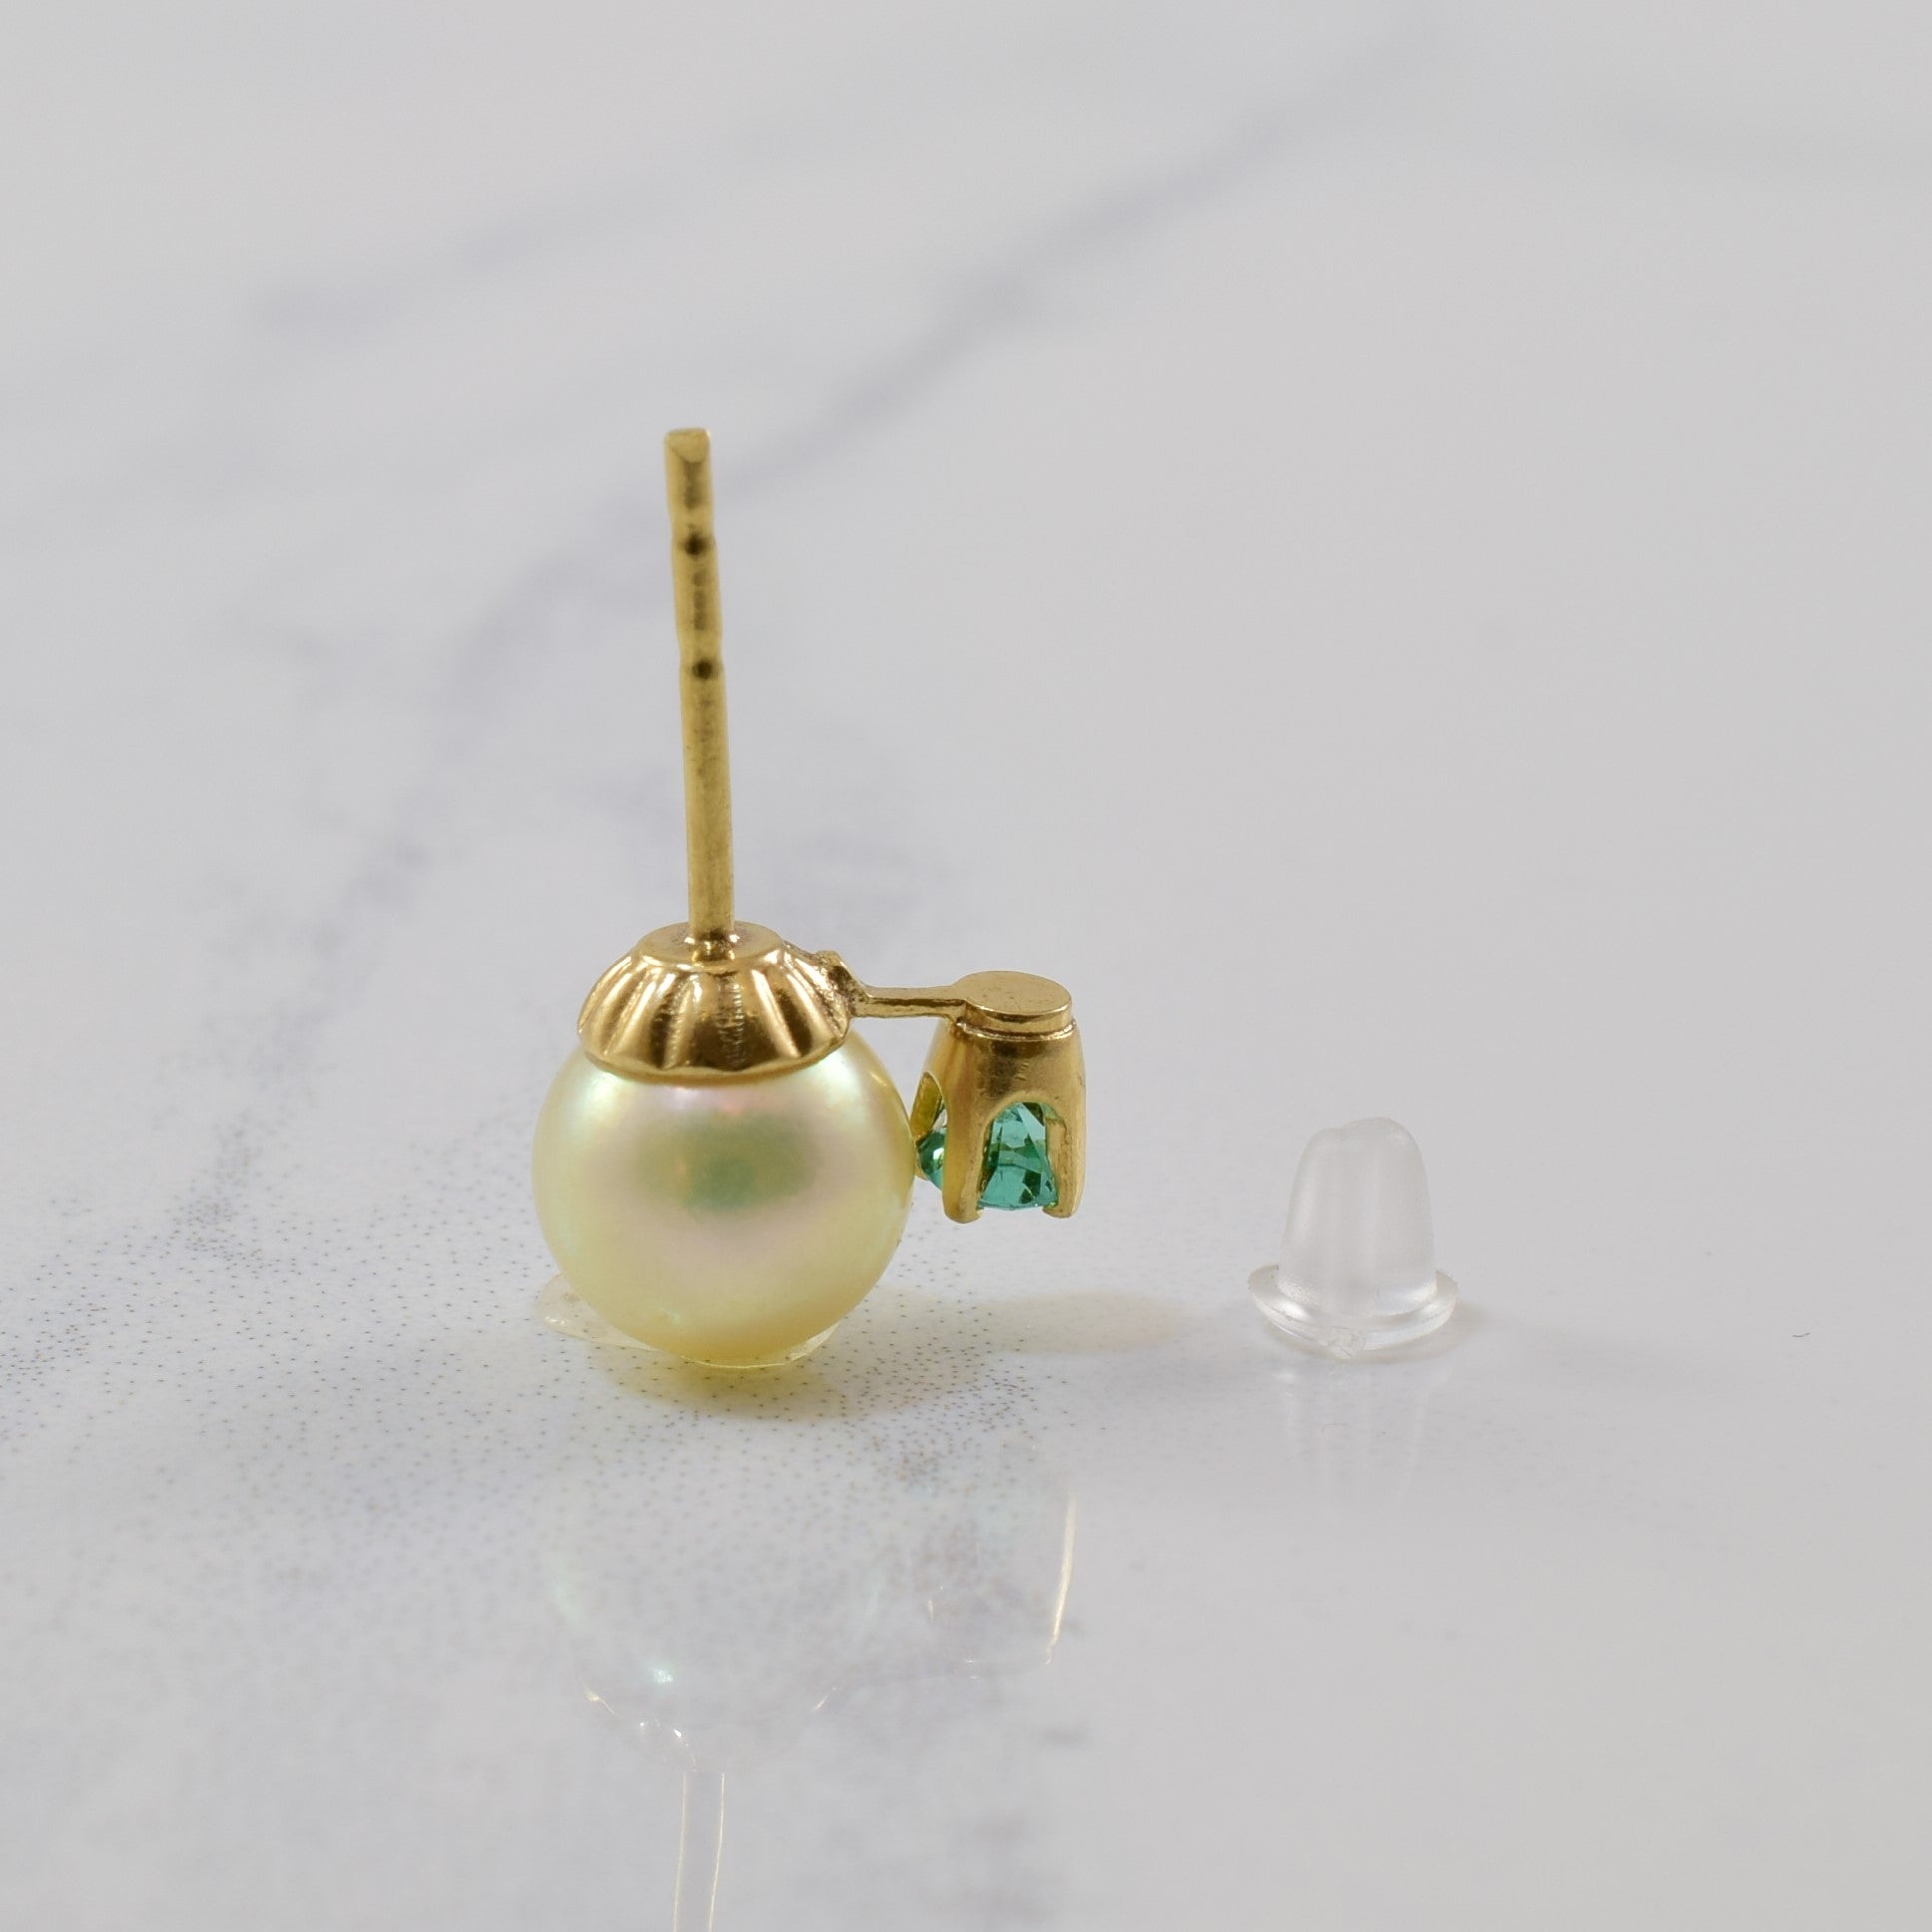 Pearl & Emerald Stud Earrings | 4.80ctw, 0.20ctw |